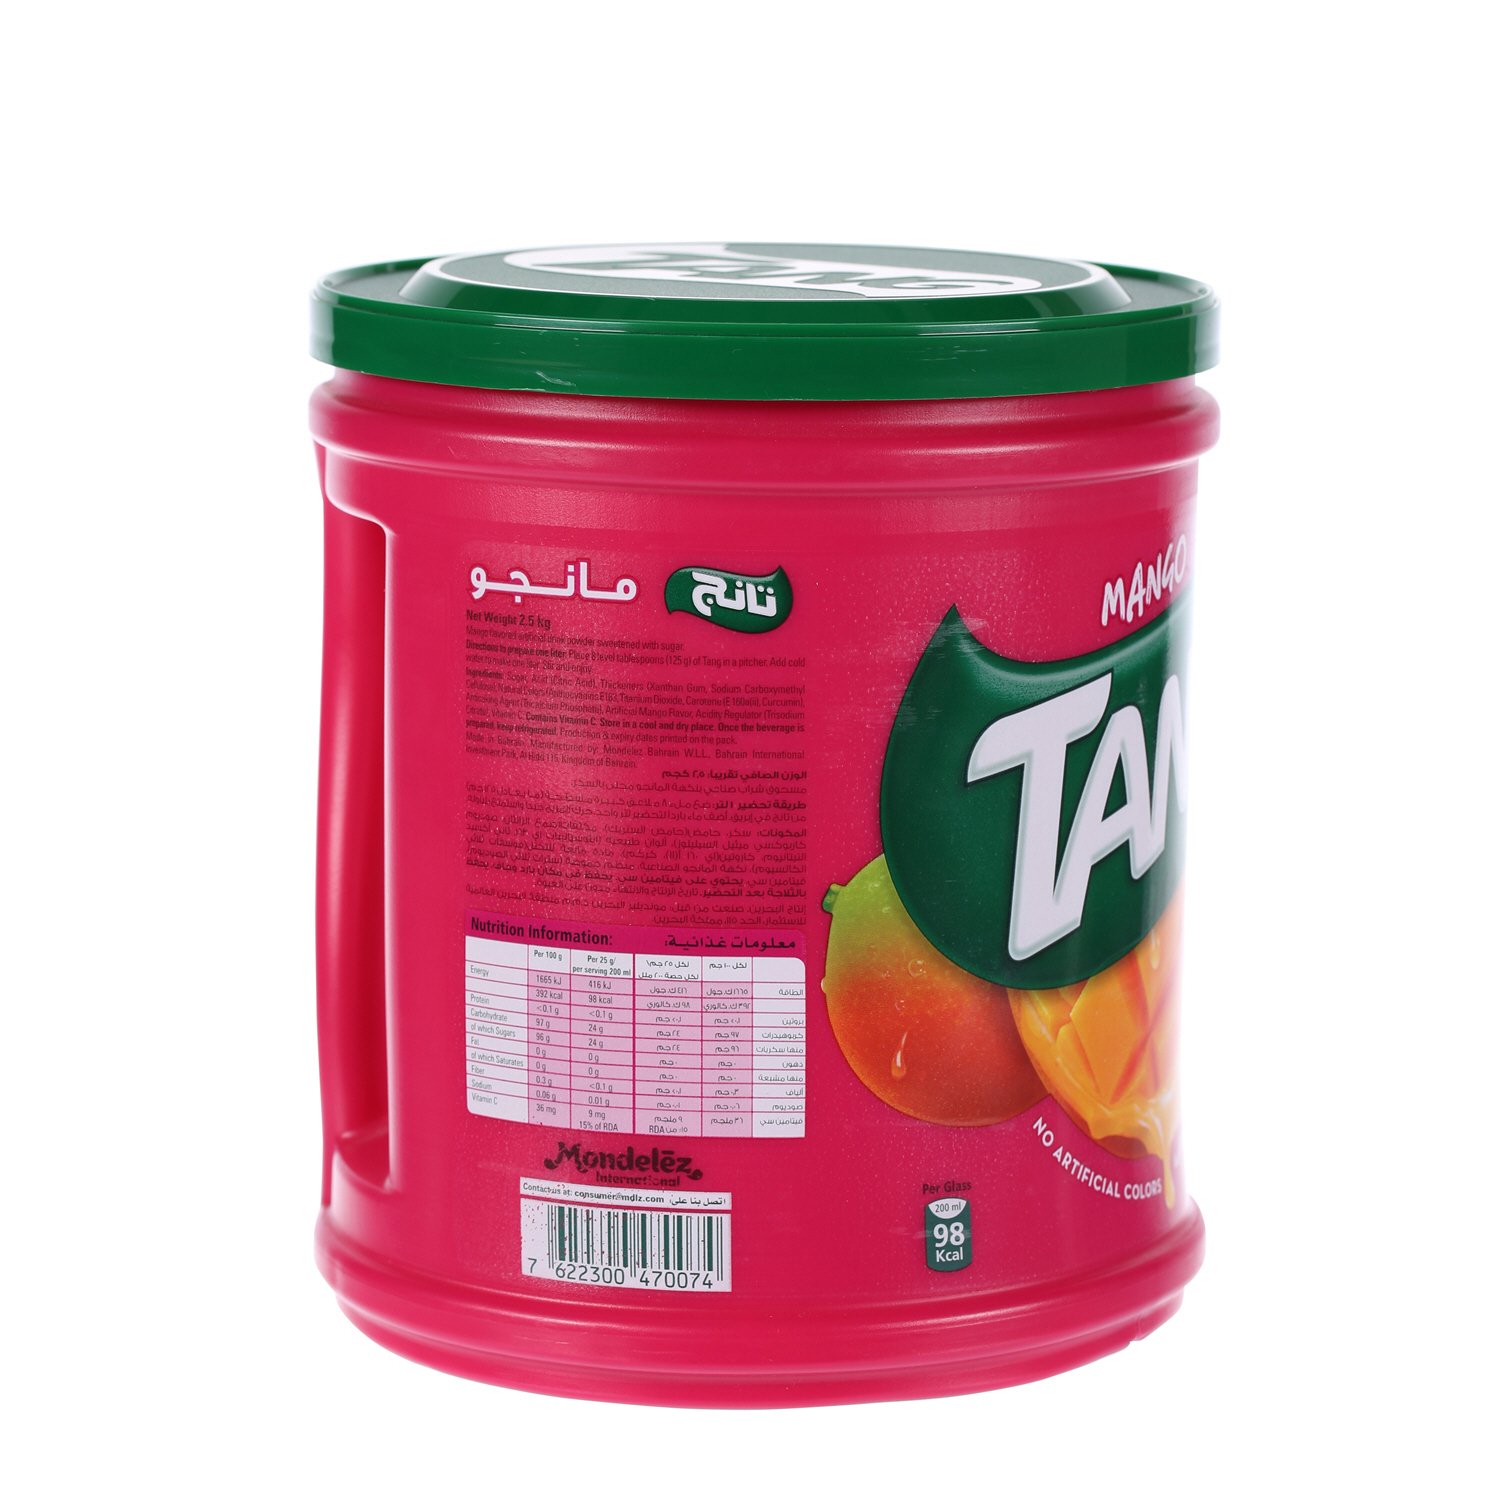 Tang Mango 2.5Kg